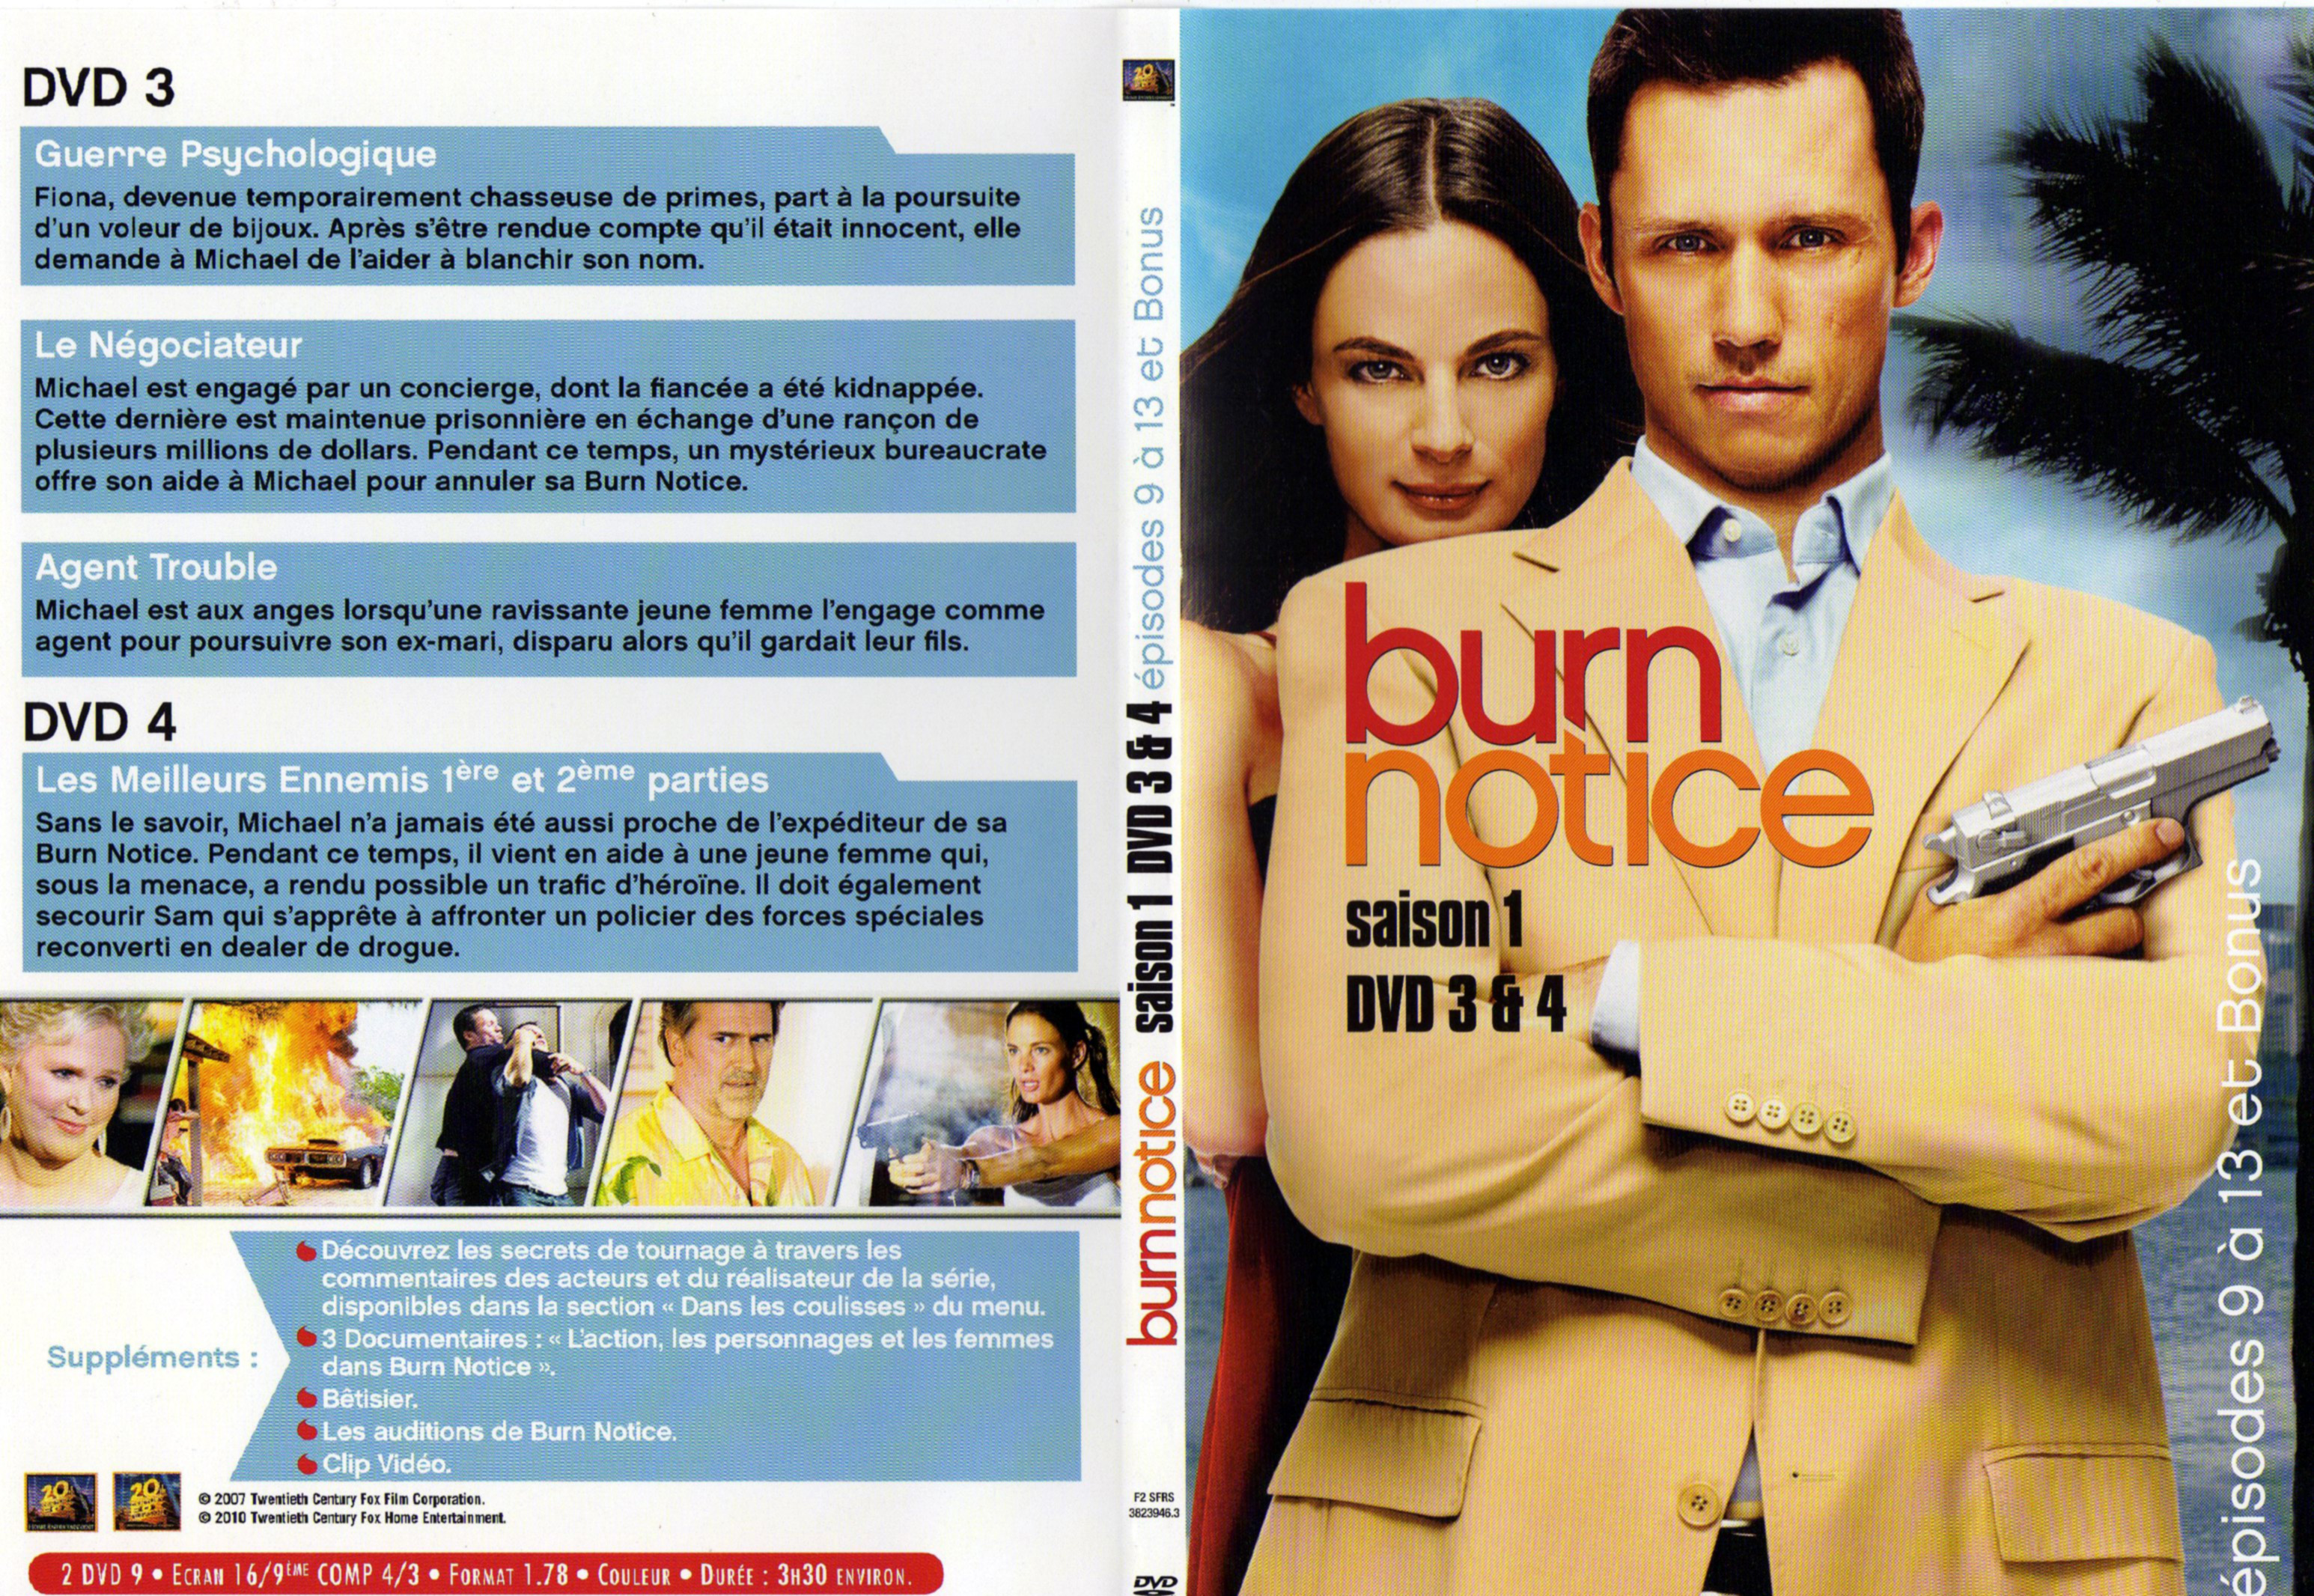 Jaquette DVD Burn notice saison 1 DVD 3